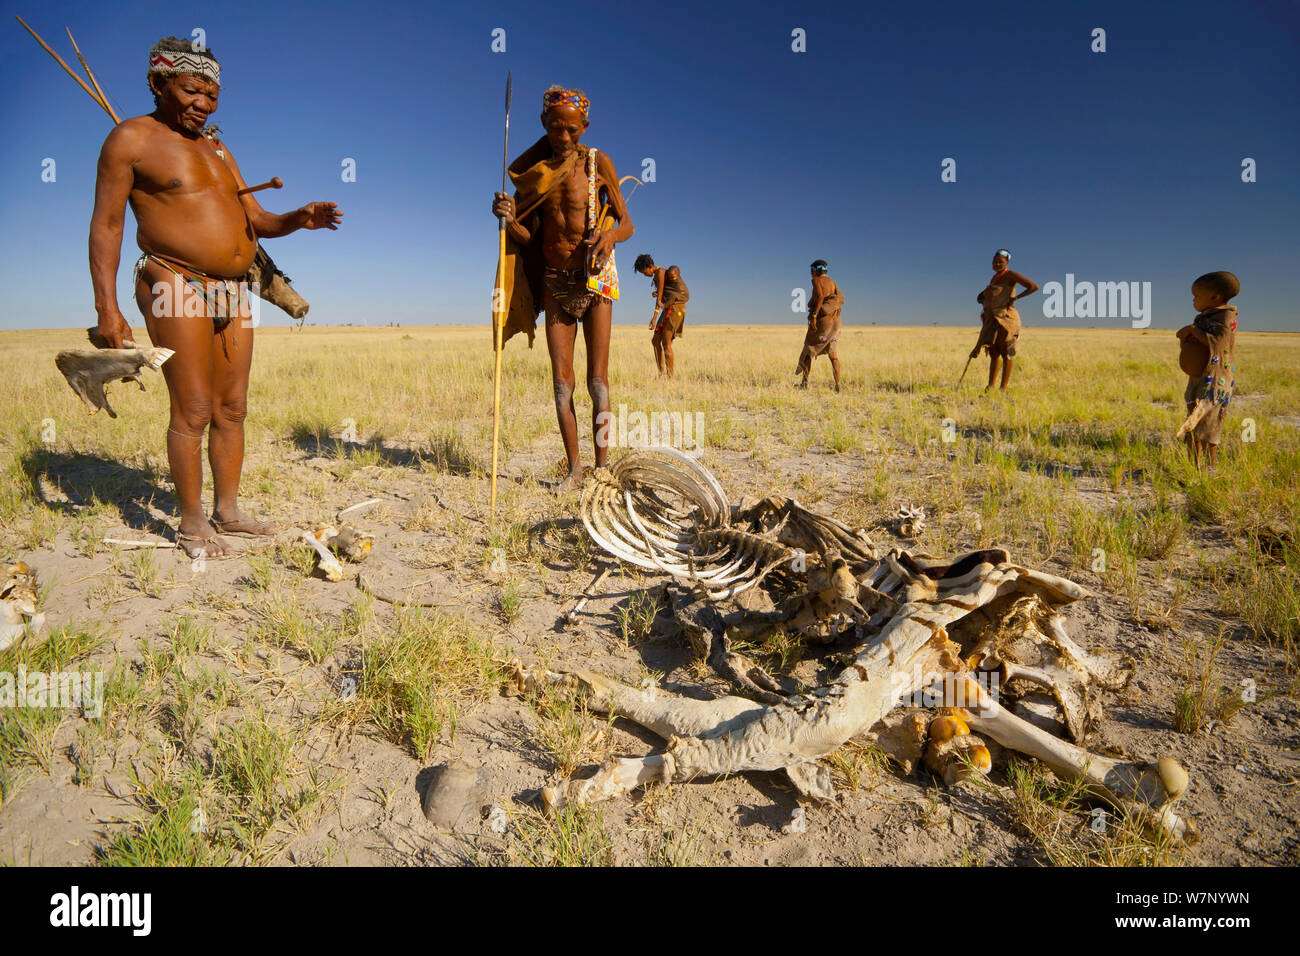 Zu/'hoasi Bushman inspecter la carcasse d'un zèbre Des Plaines (Equus quagga) sur les prairies ouvertes du Kalahari, au Botswana. Avril 2012. Banque D'Images